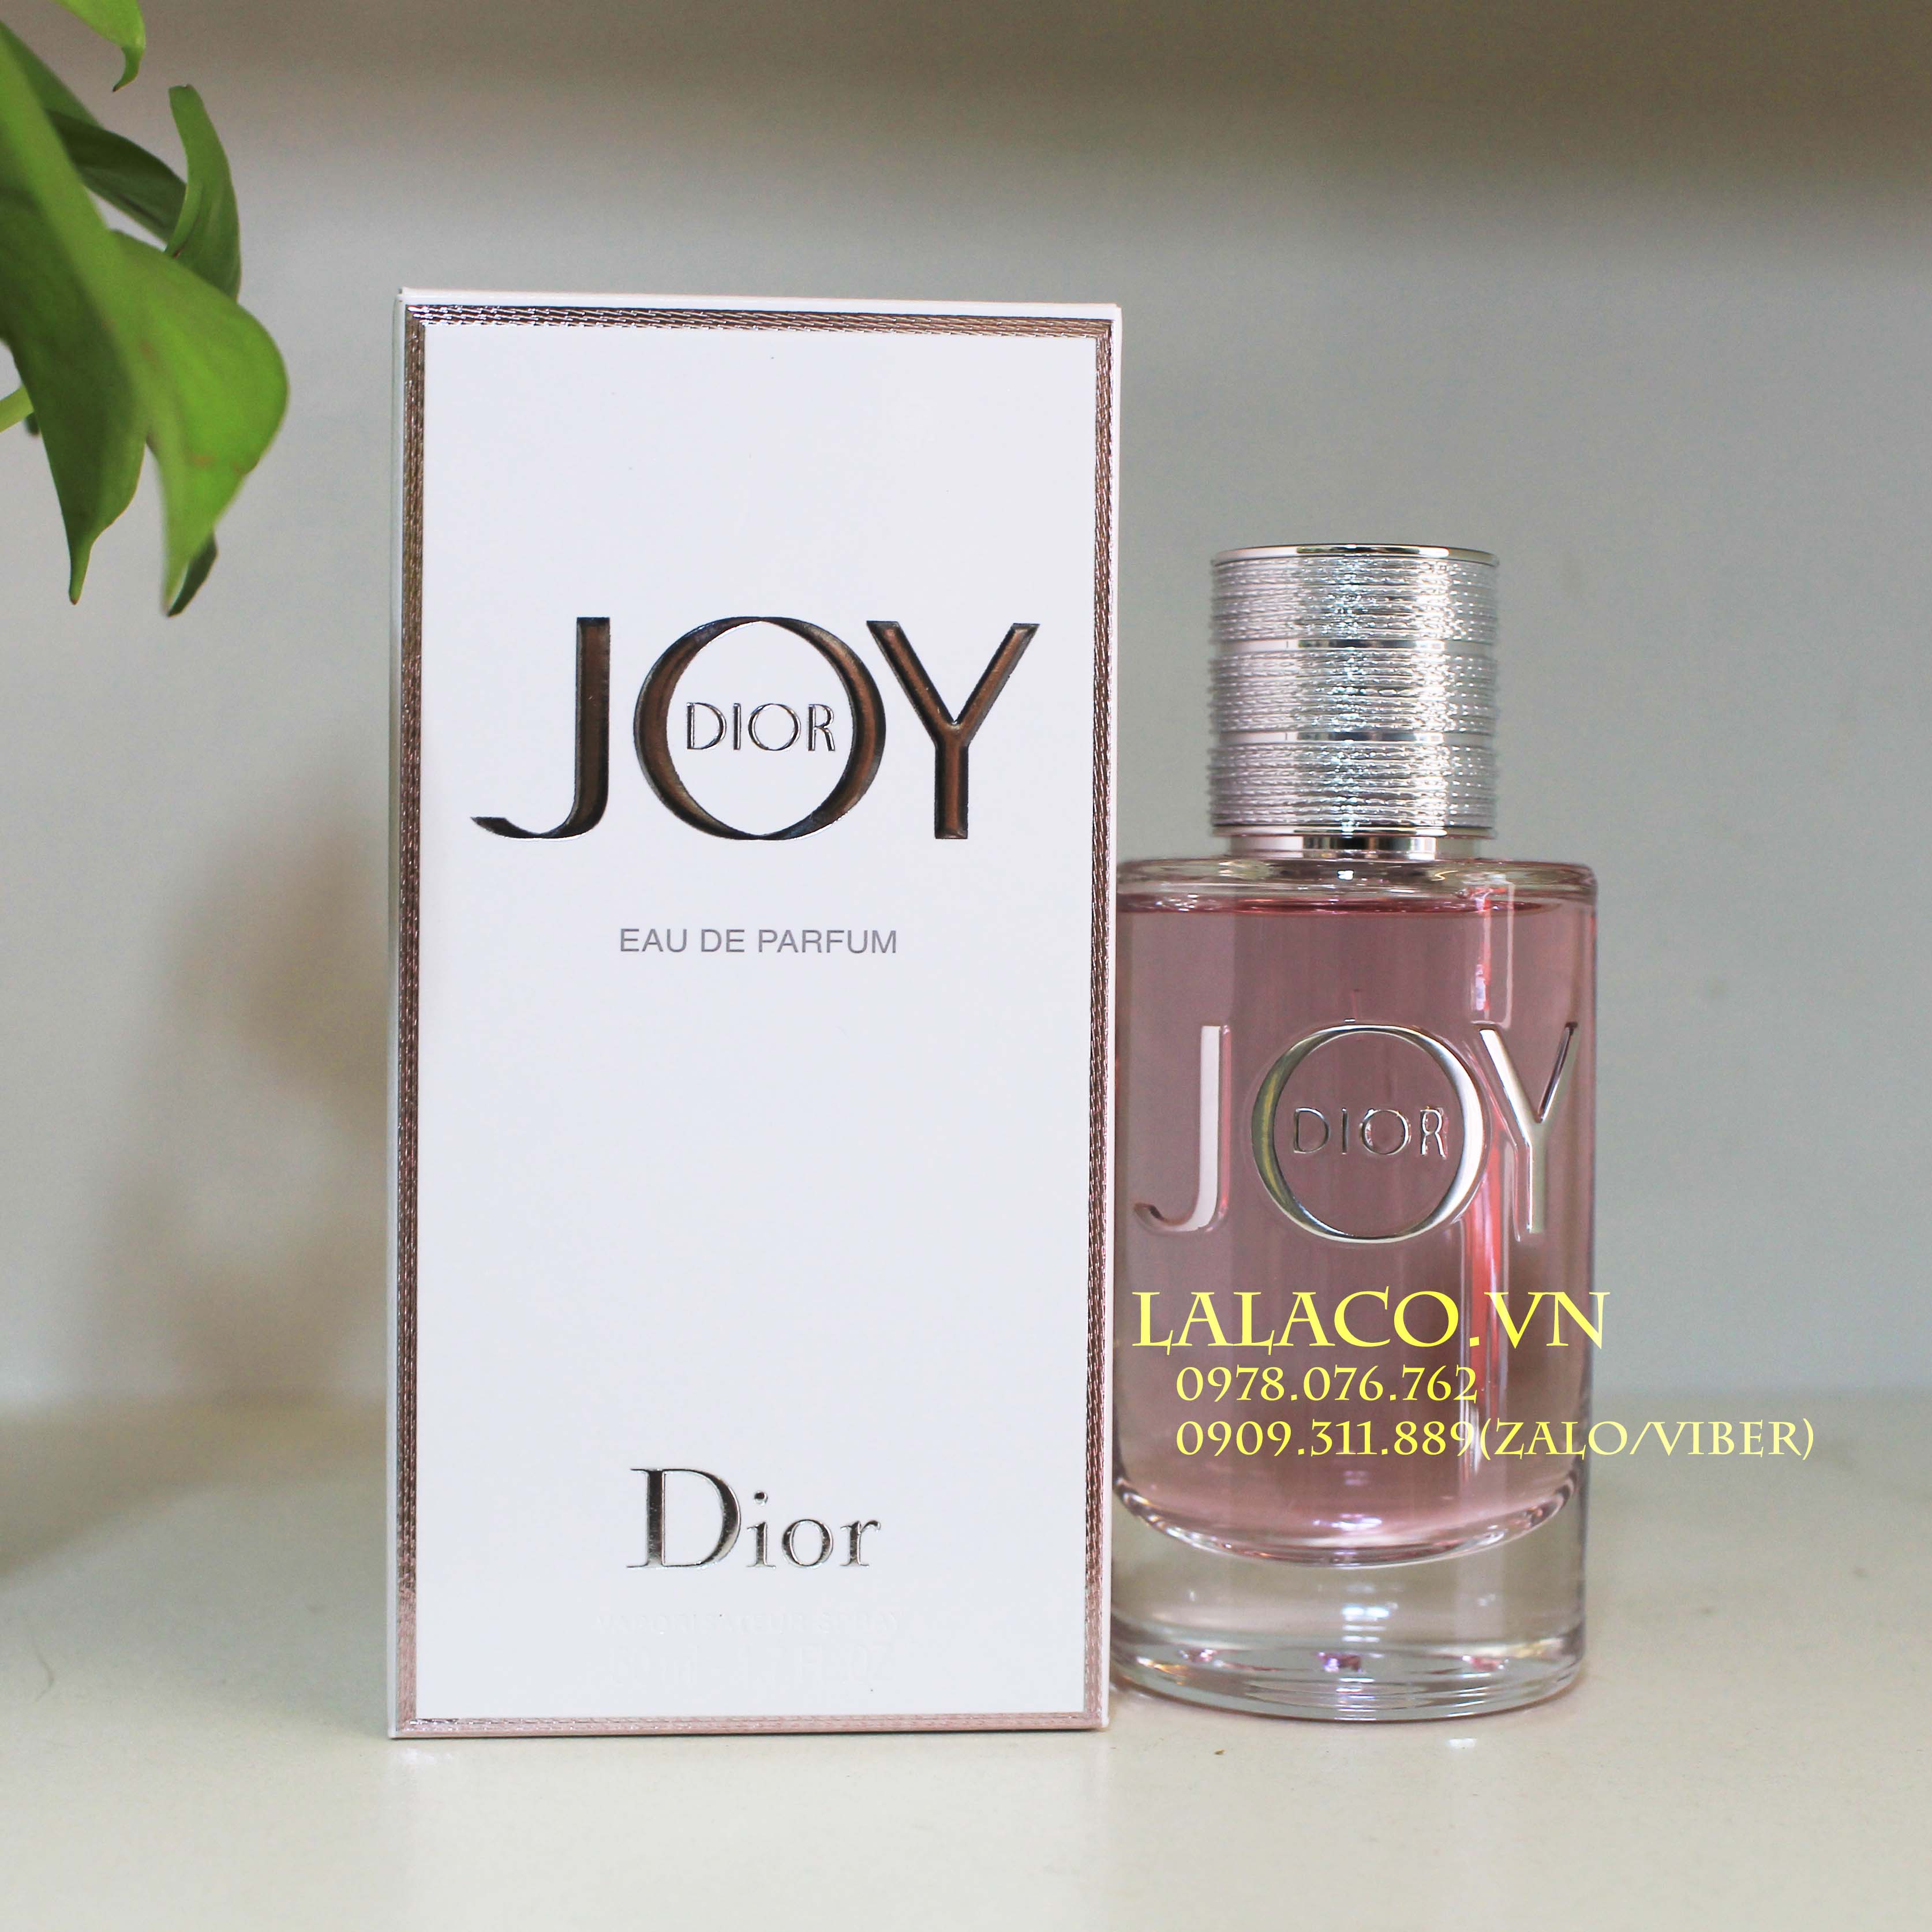 REVIEW Dior Joy  Món Phụ Kiện Phái Nữ Không Thể Thiếu  Orchardvn   YouTube